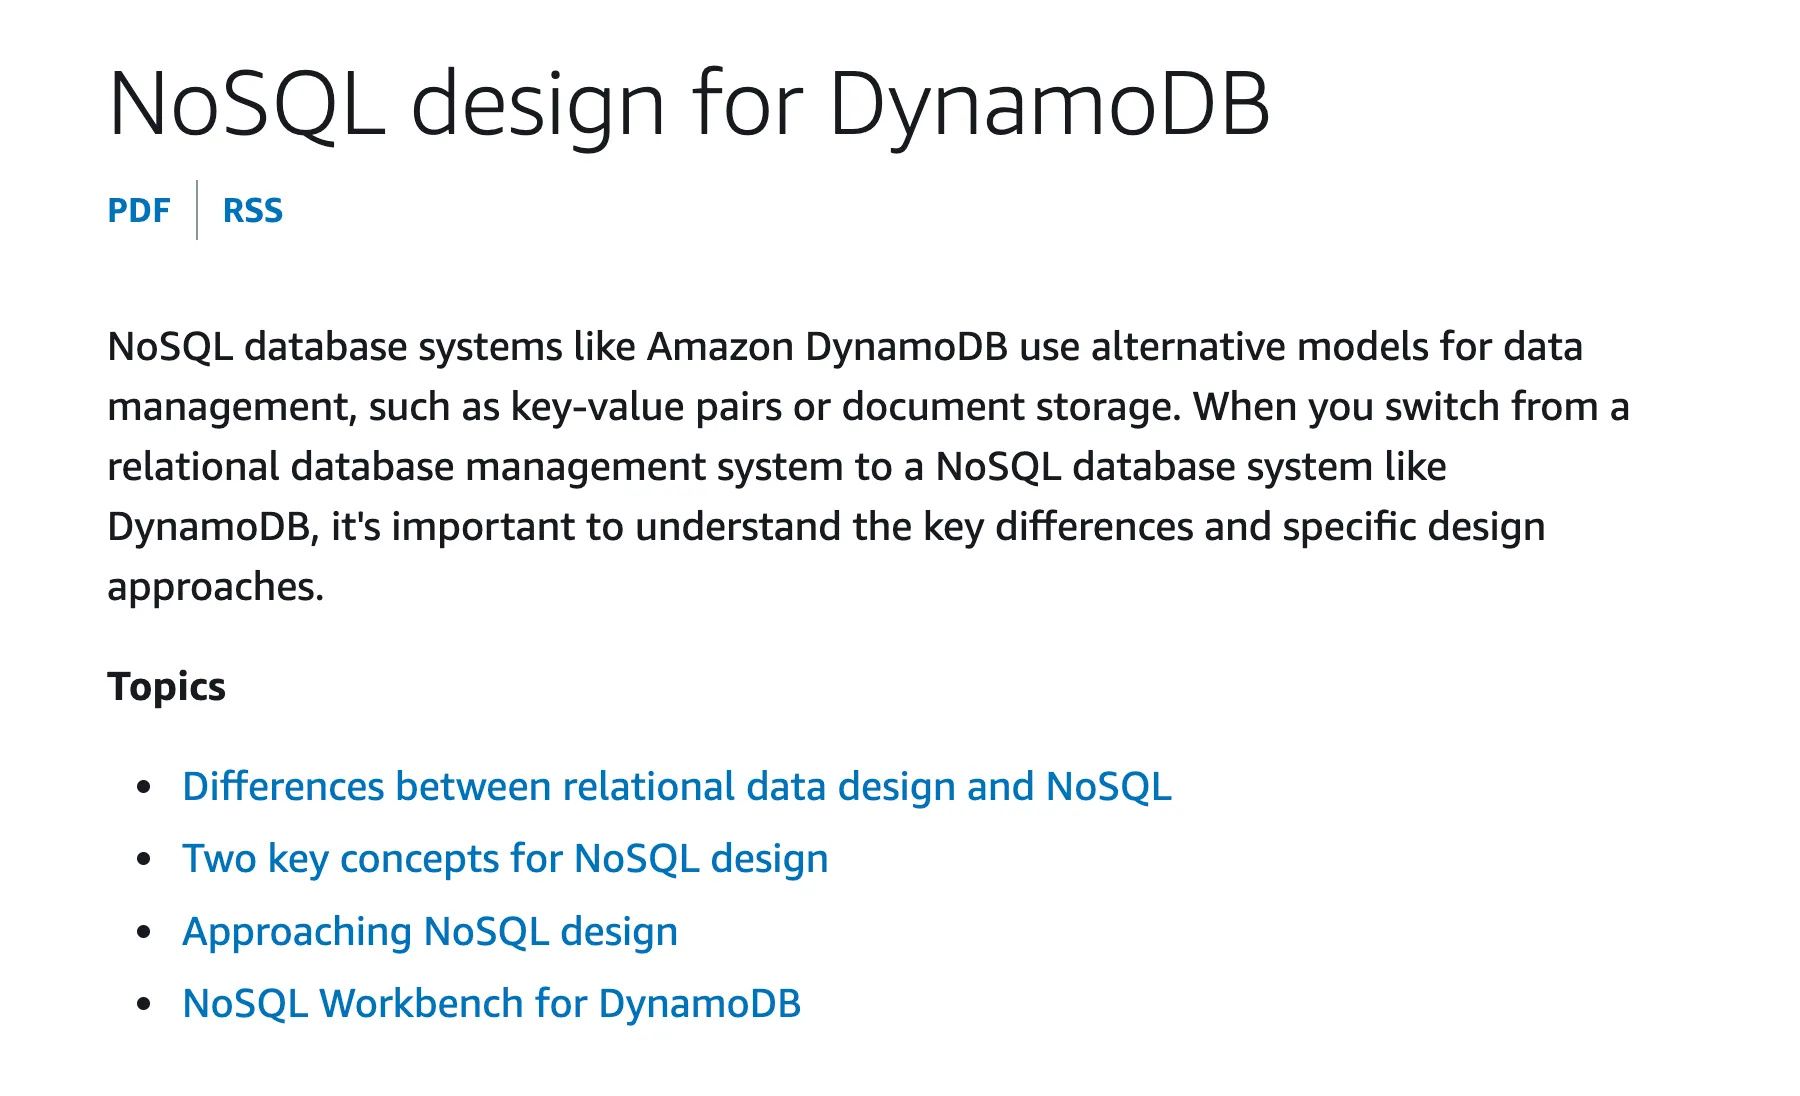 DynamoDB documentation